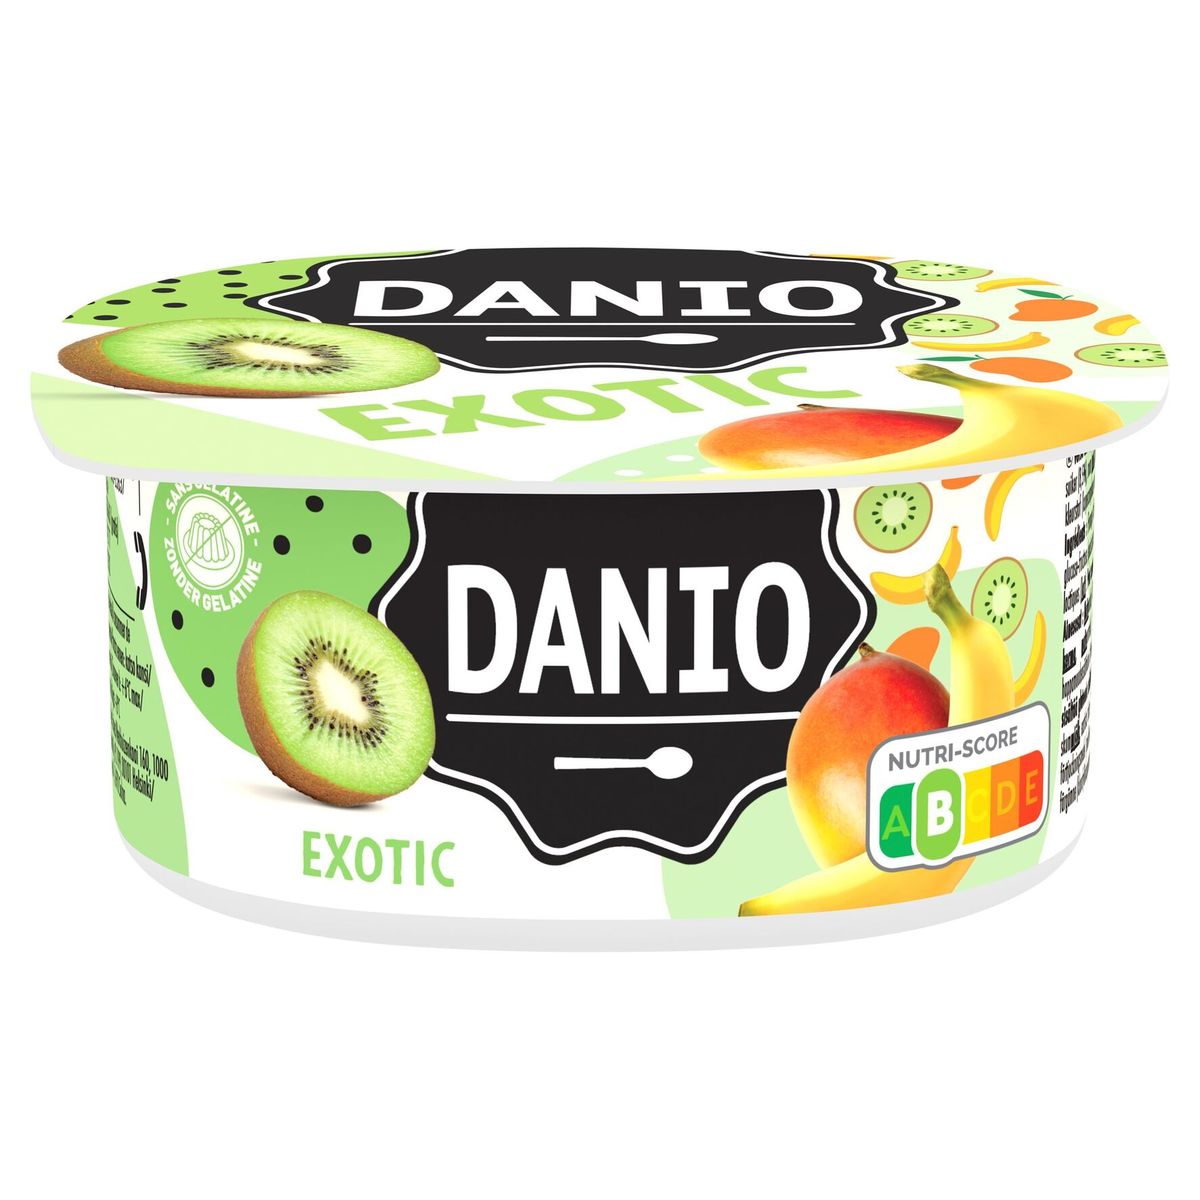 Danio Specialiteit met Verse Kaas Exotic Snack 180 g